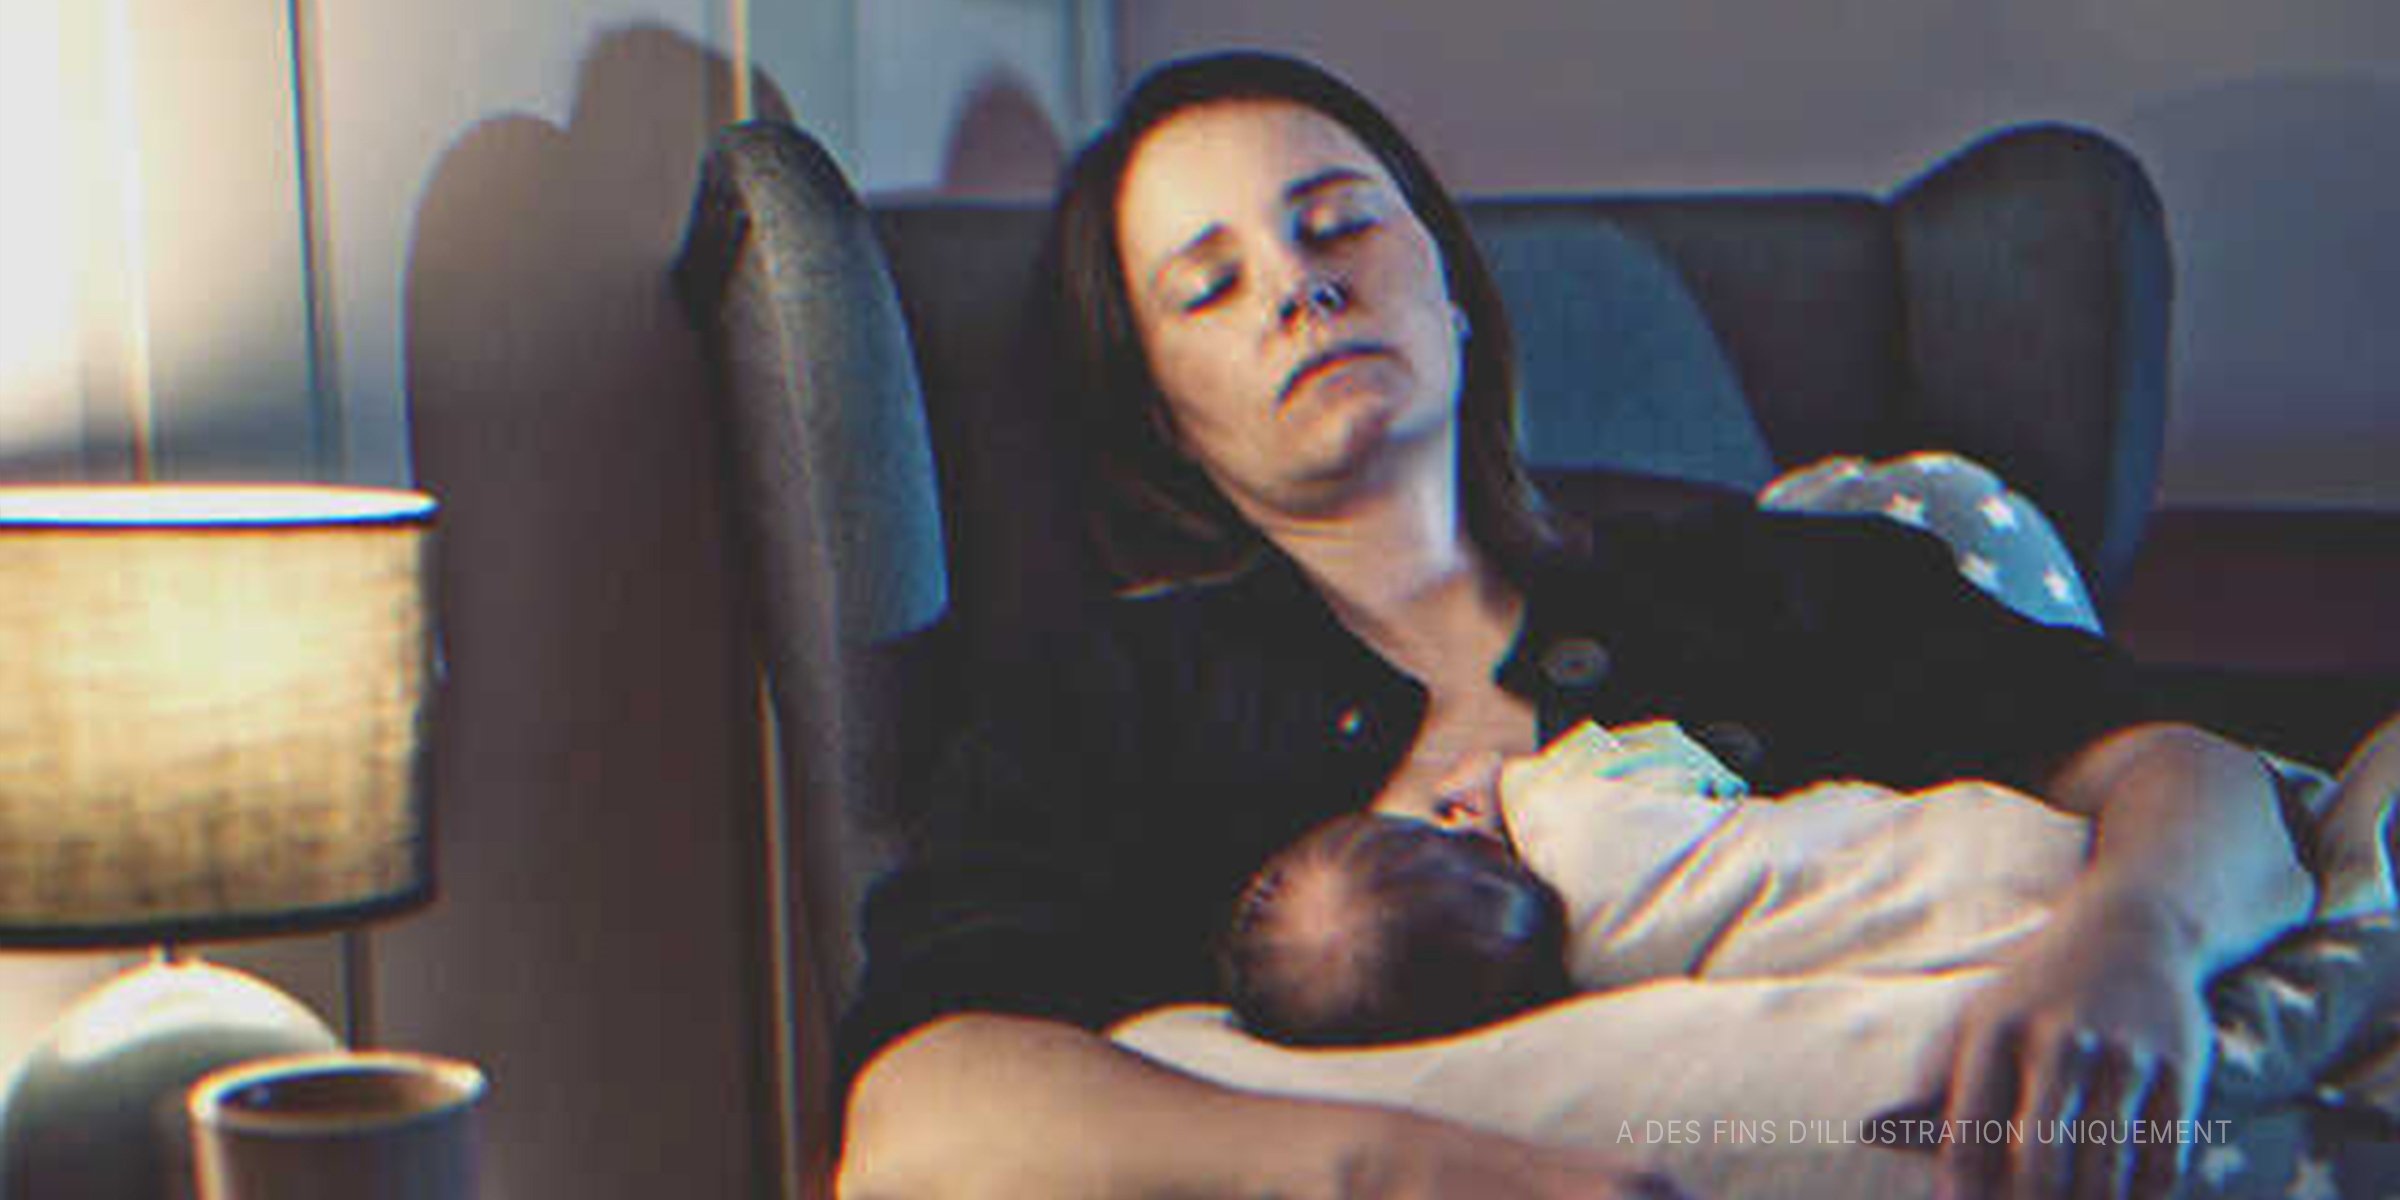 Une mère fatiguée en train de dormir et de nourrir son bébé | Source : Getty Images   